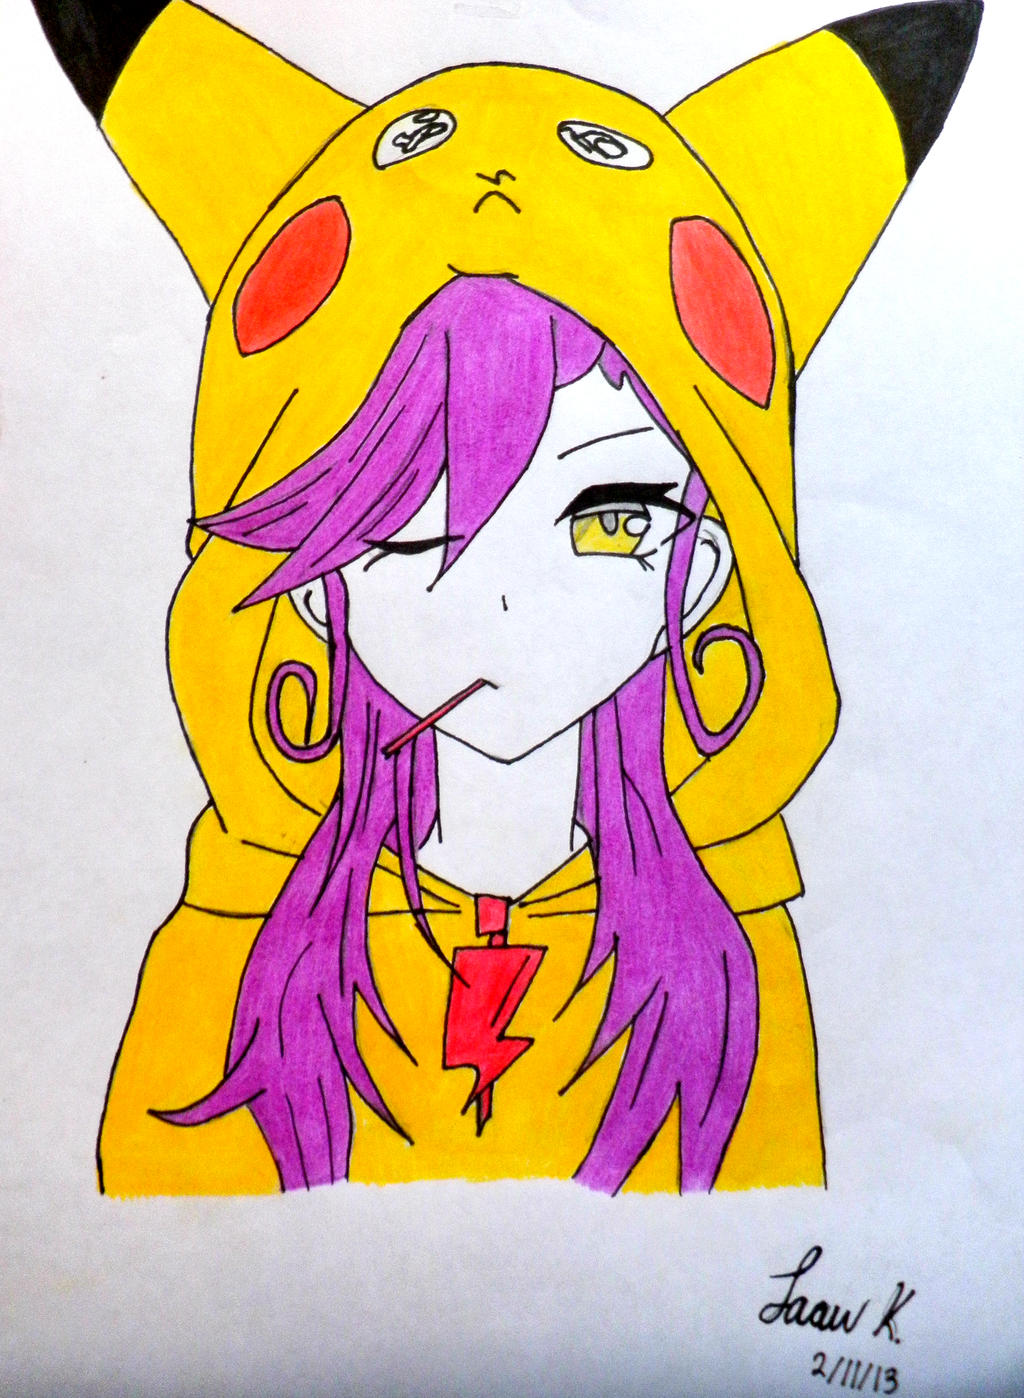 Pikachu Anime Girl by joankr on DeviantArt